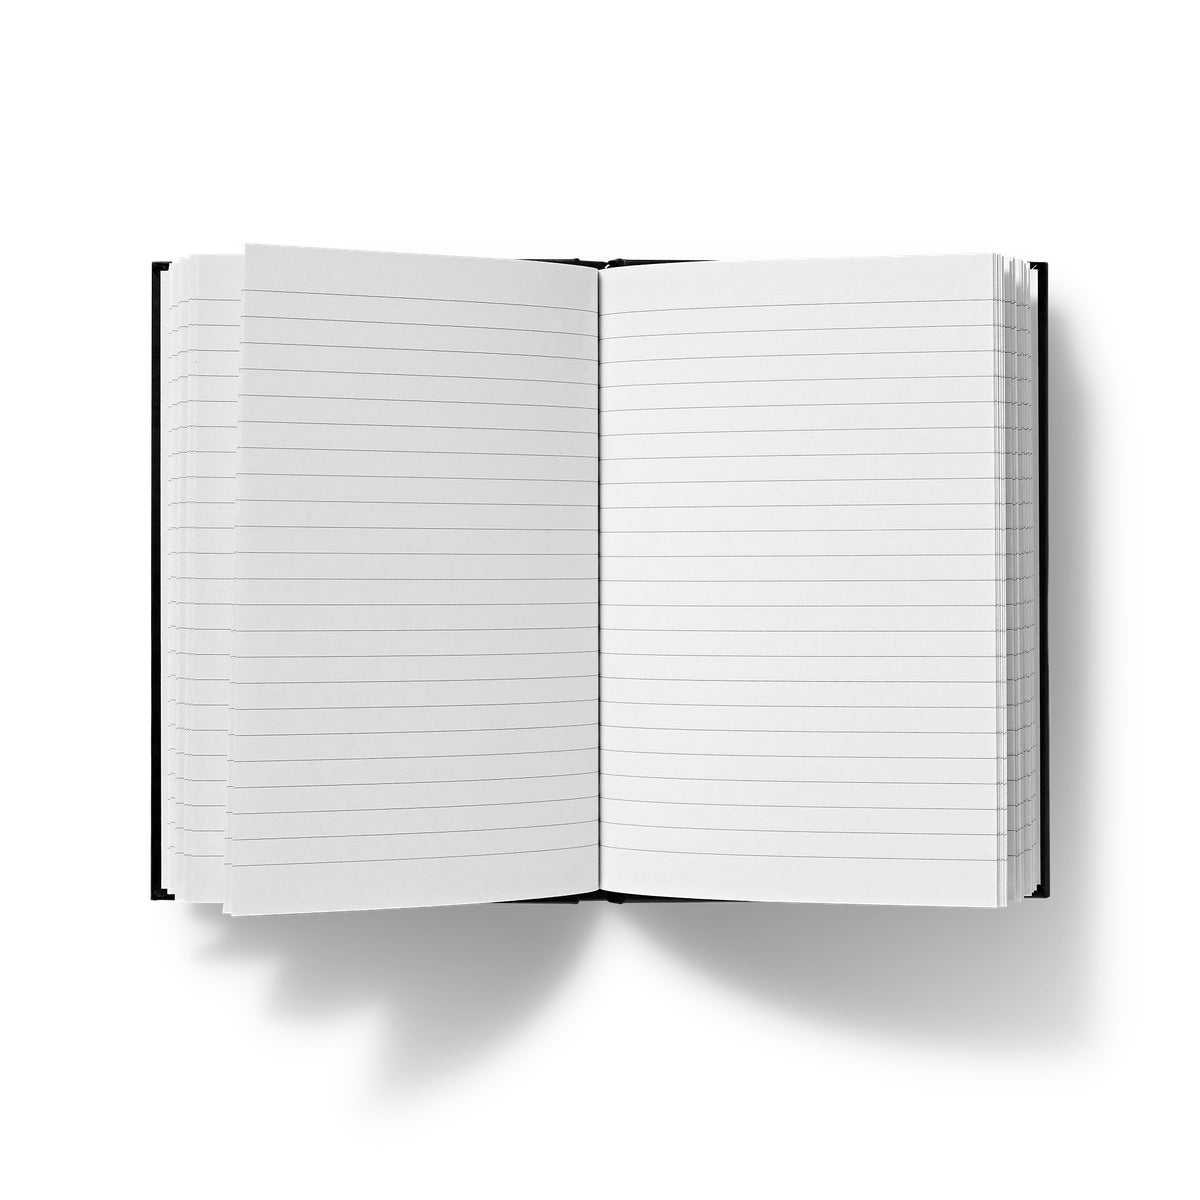 Plan It - A5 Hardback Journal